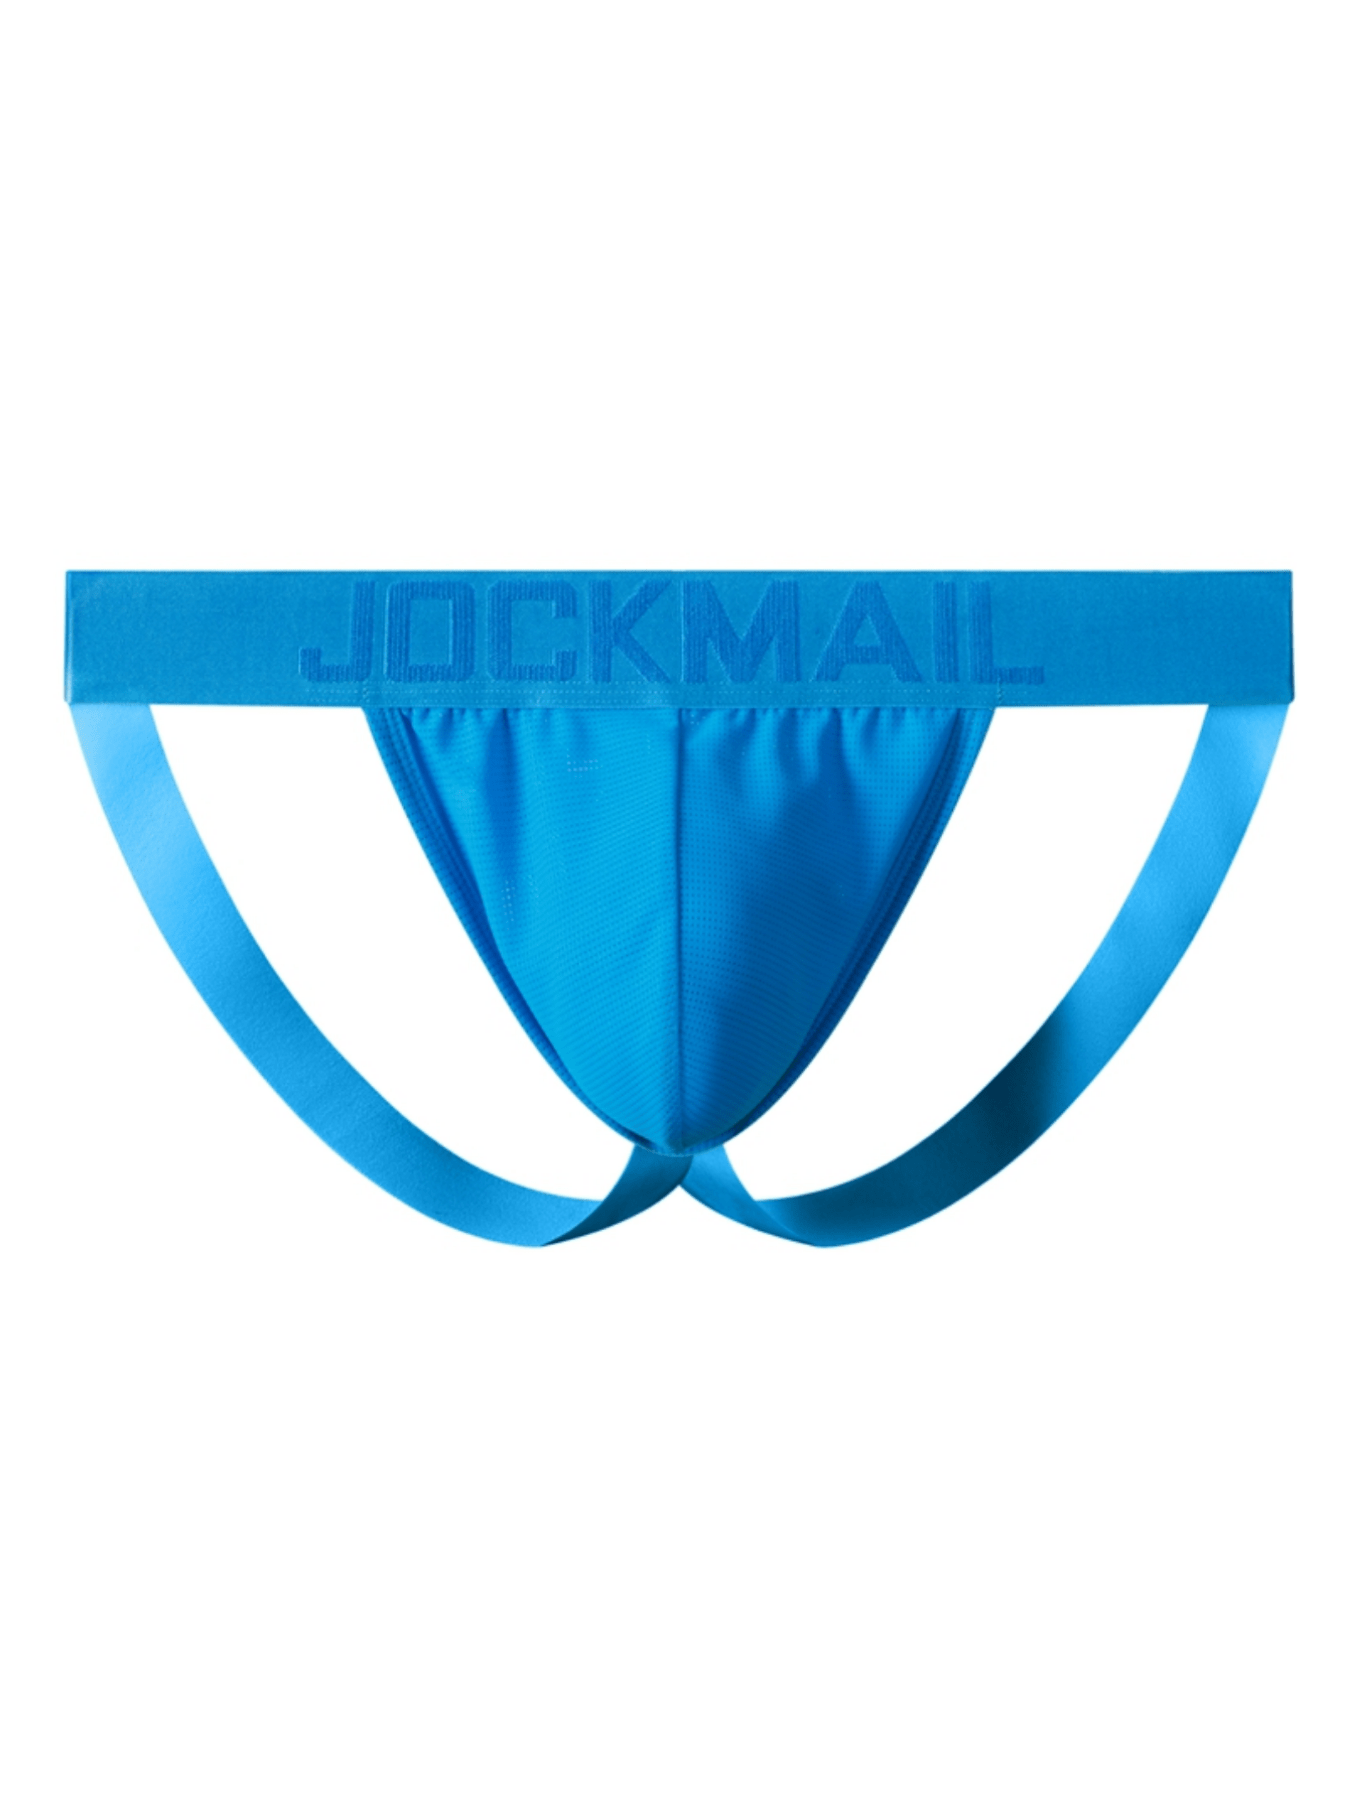 JOCKMAIL Men's Jockstrap Athletic Supporter Underwear Gym Workout Strap  Brief